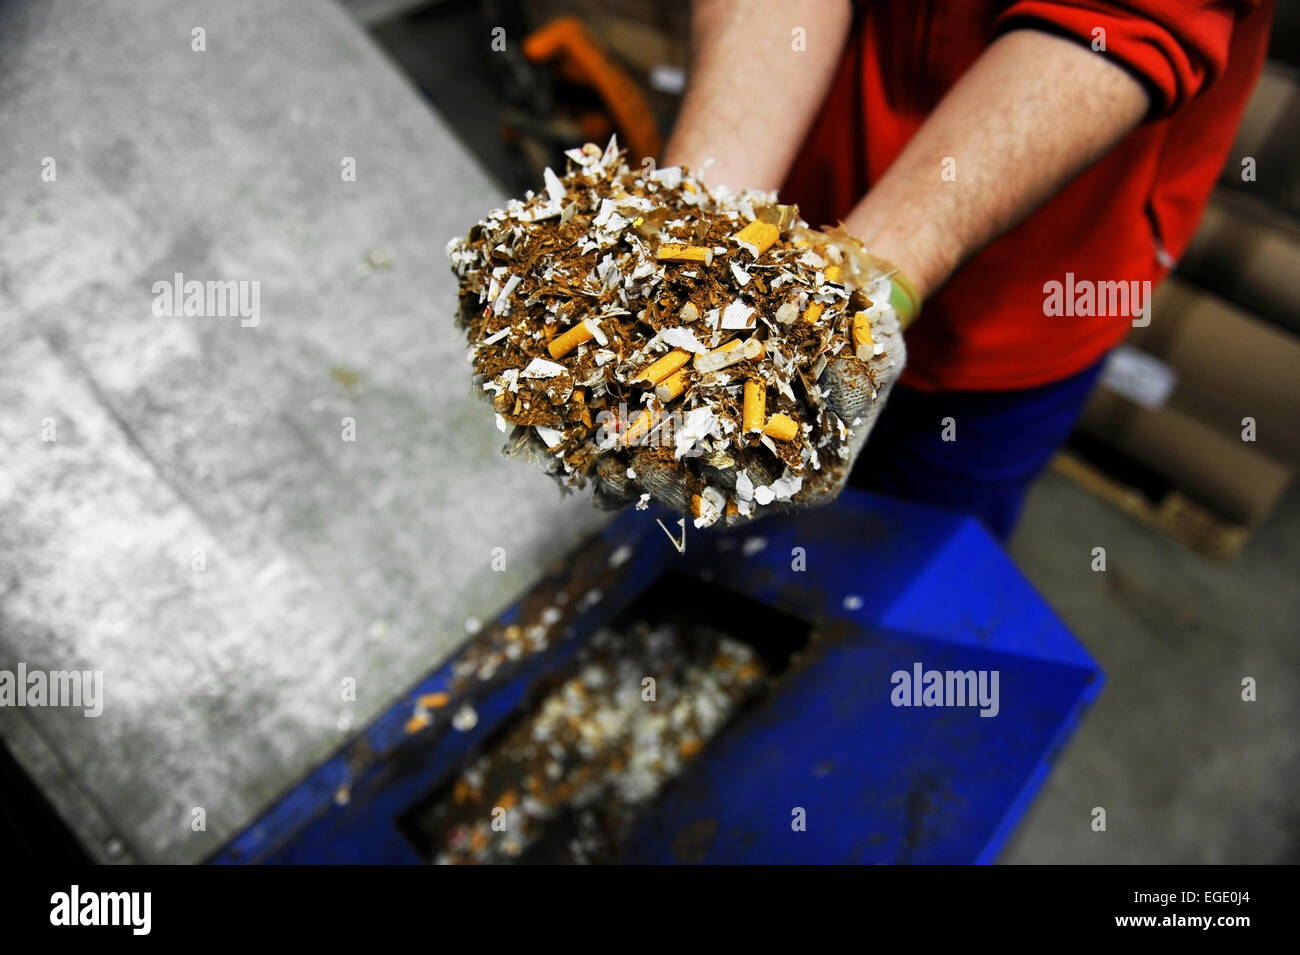 Mains d'un homme tenant un tas de fausses cigarettes détruit Banque D'Images